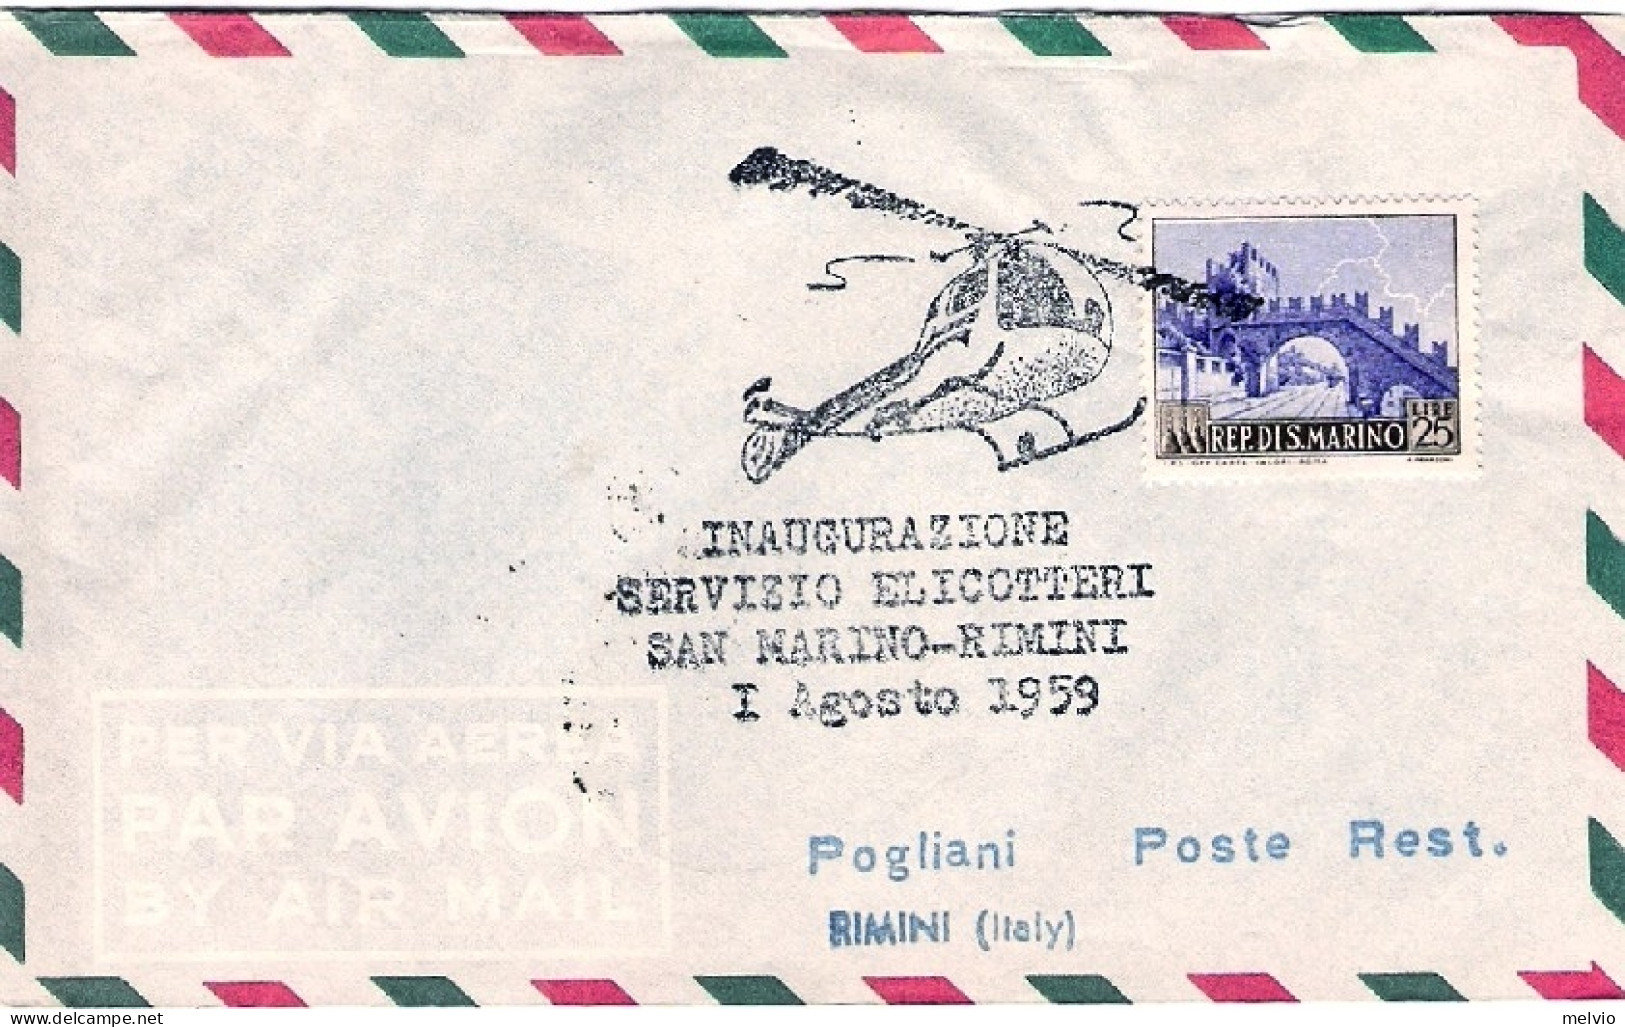 San Marino-1959 Bollo Inaugurazione Servizio Elicotteri San Marino-Rimini 1 Agos - Posta Aerea